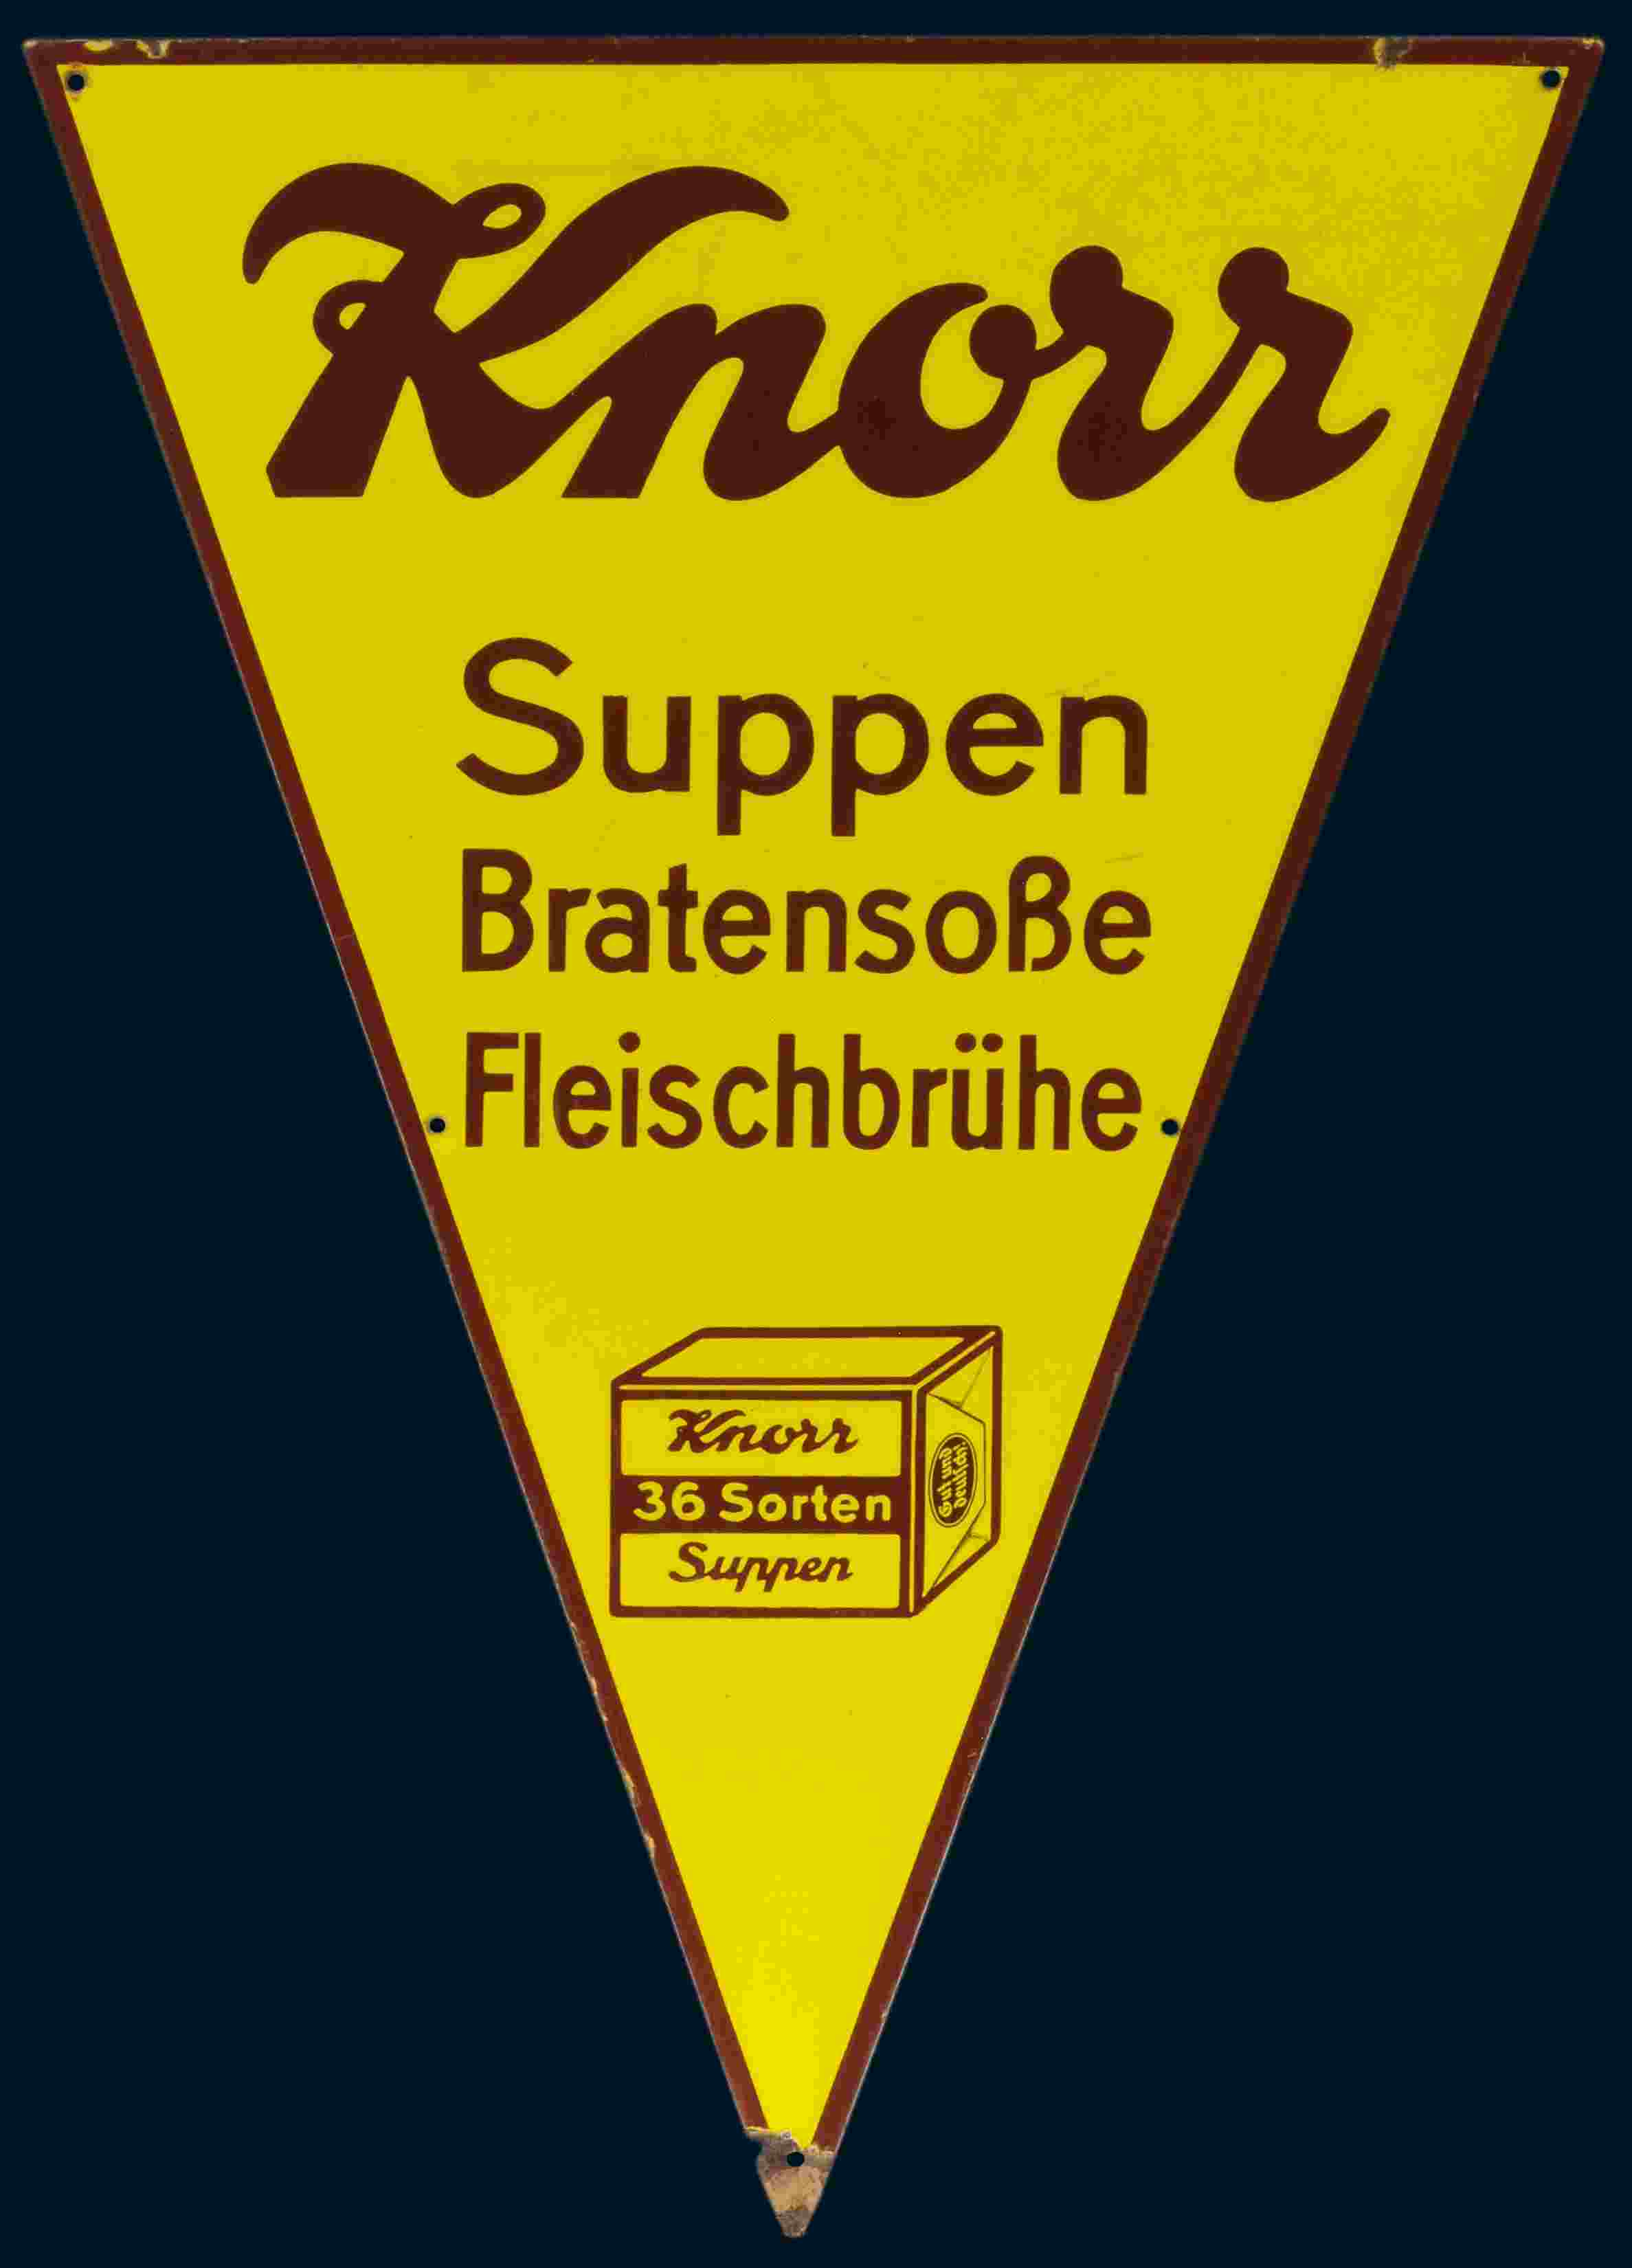 Knorr 